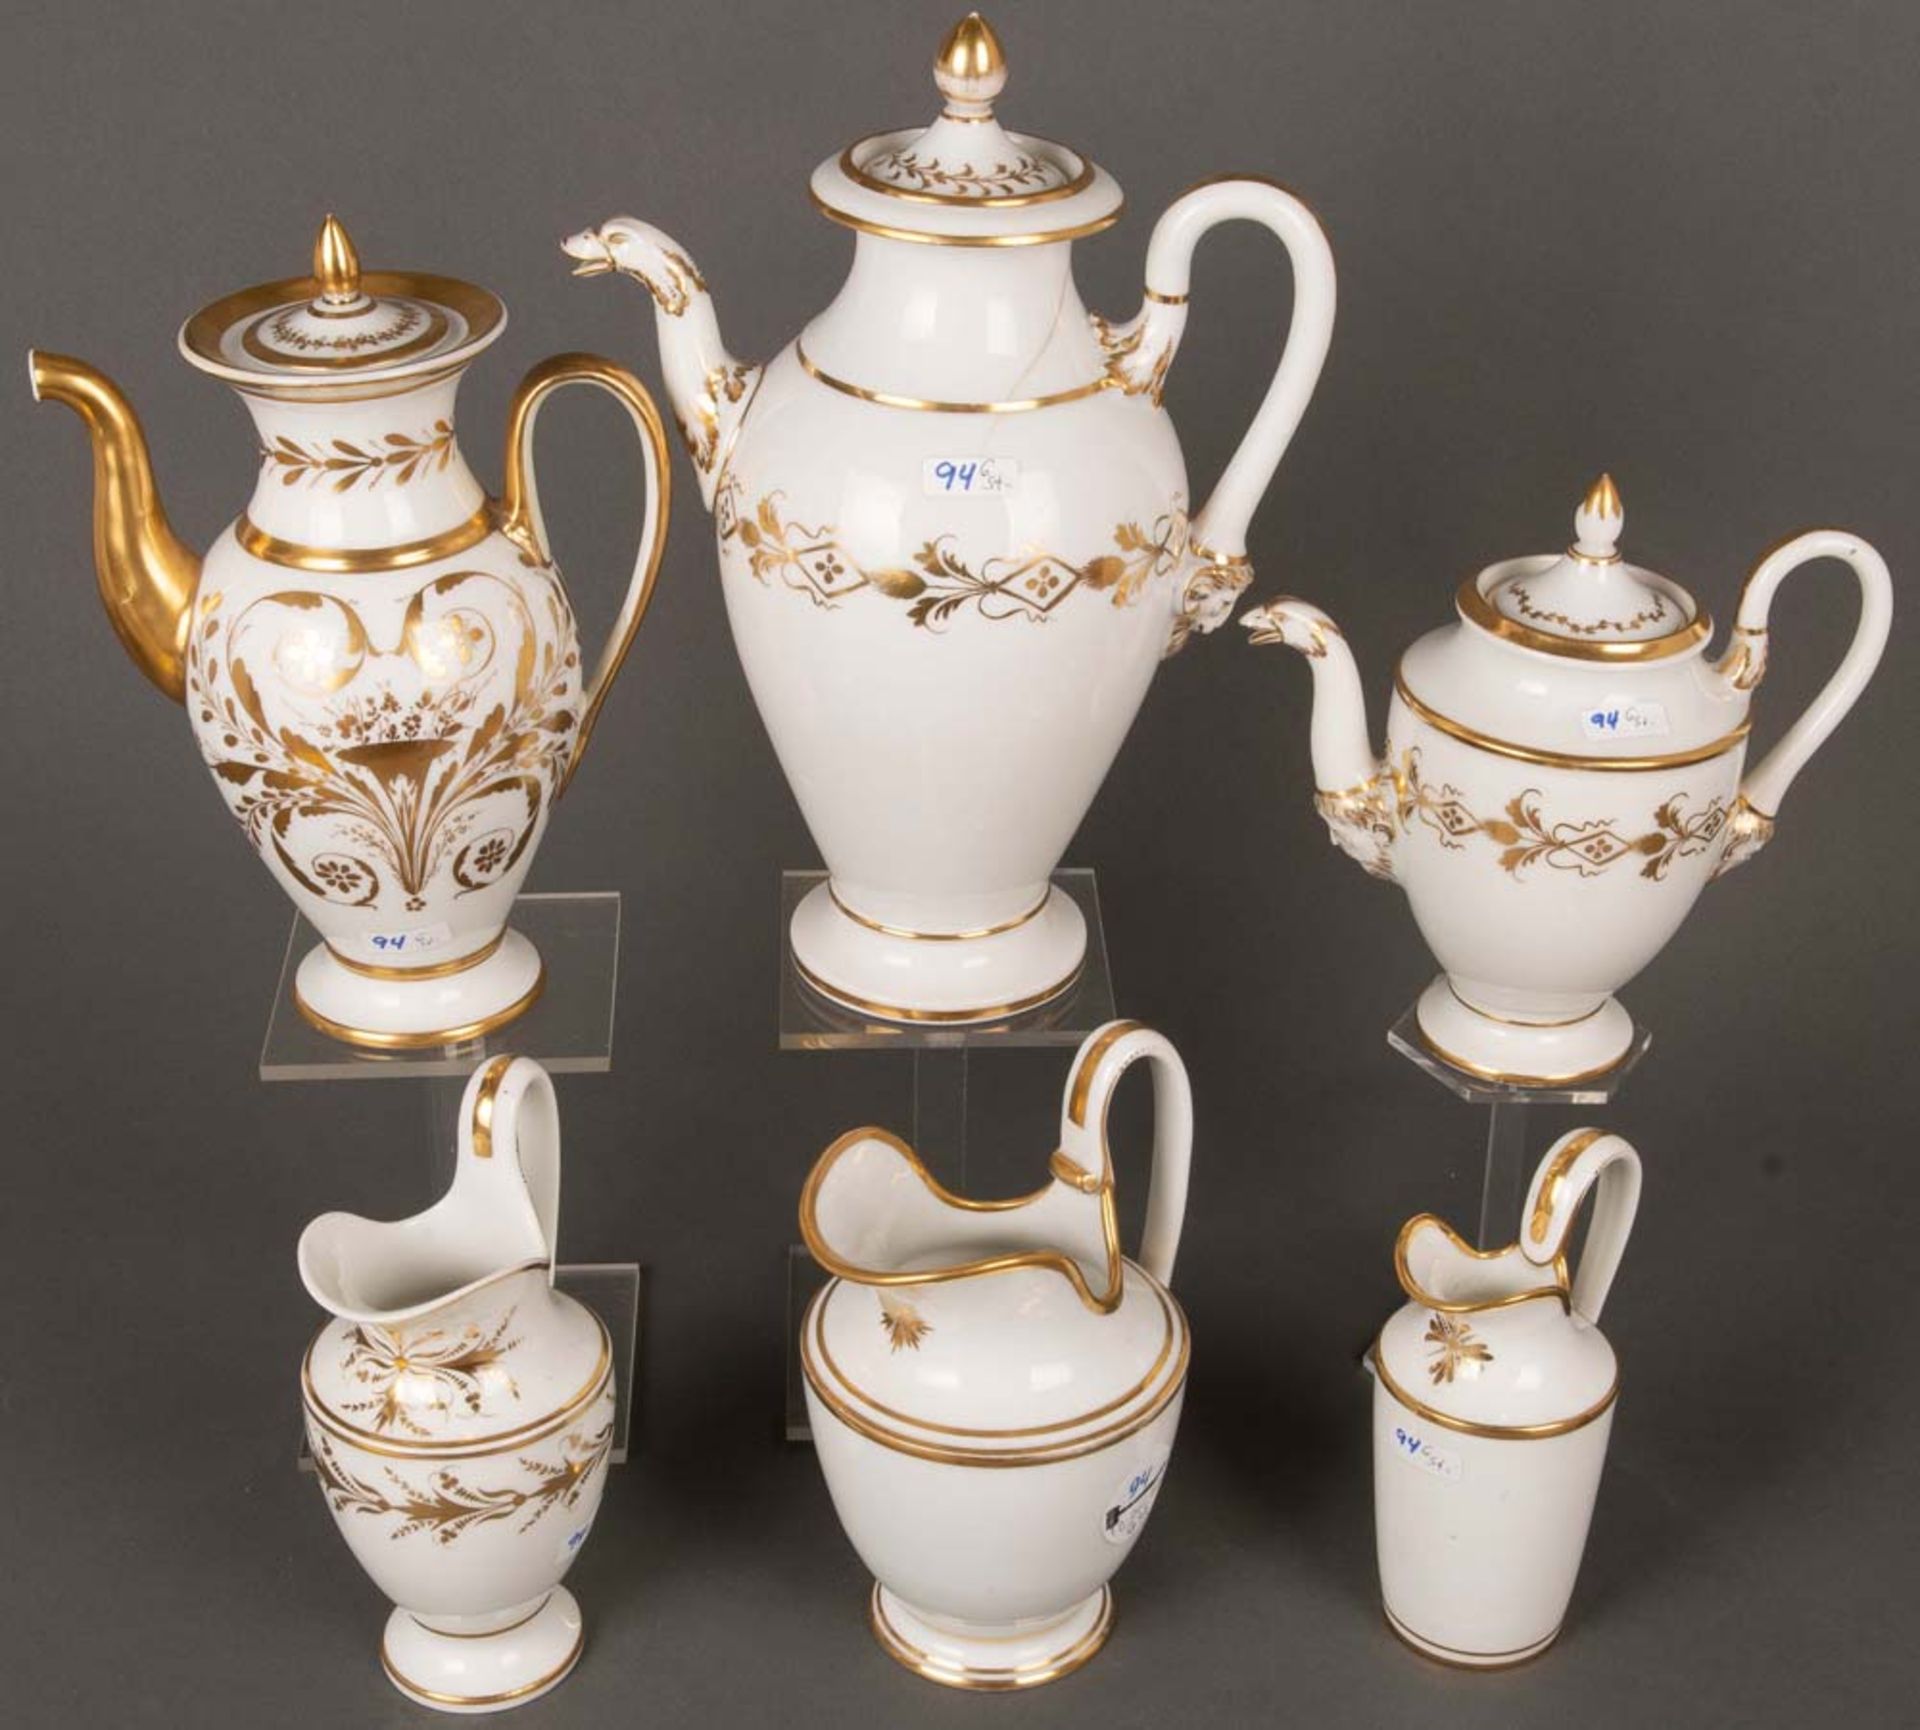 Drei Kannen und drei Milchgießer. Ludwigsburg 1806-10. Porzellan, weiß glasiert mit Goldrändern